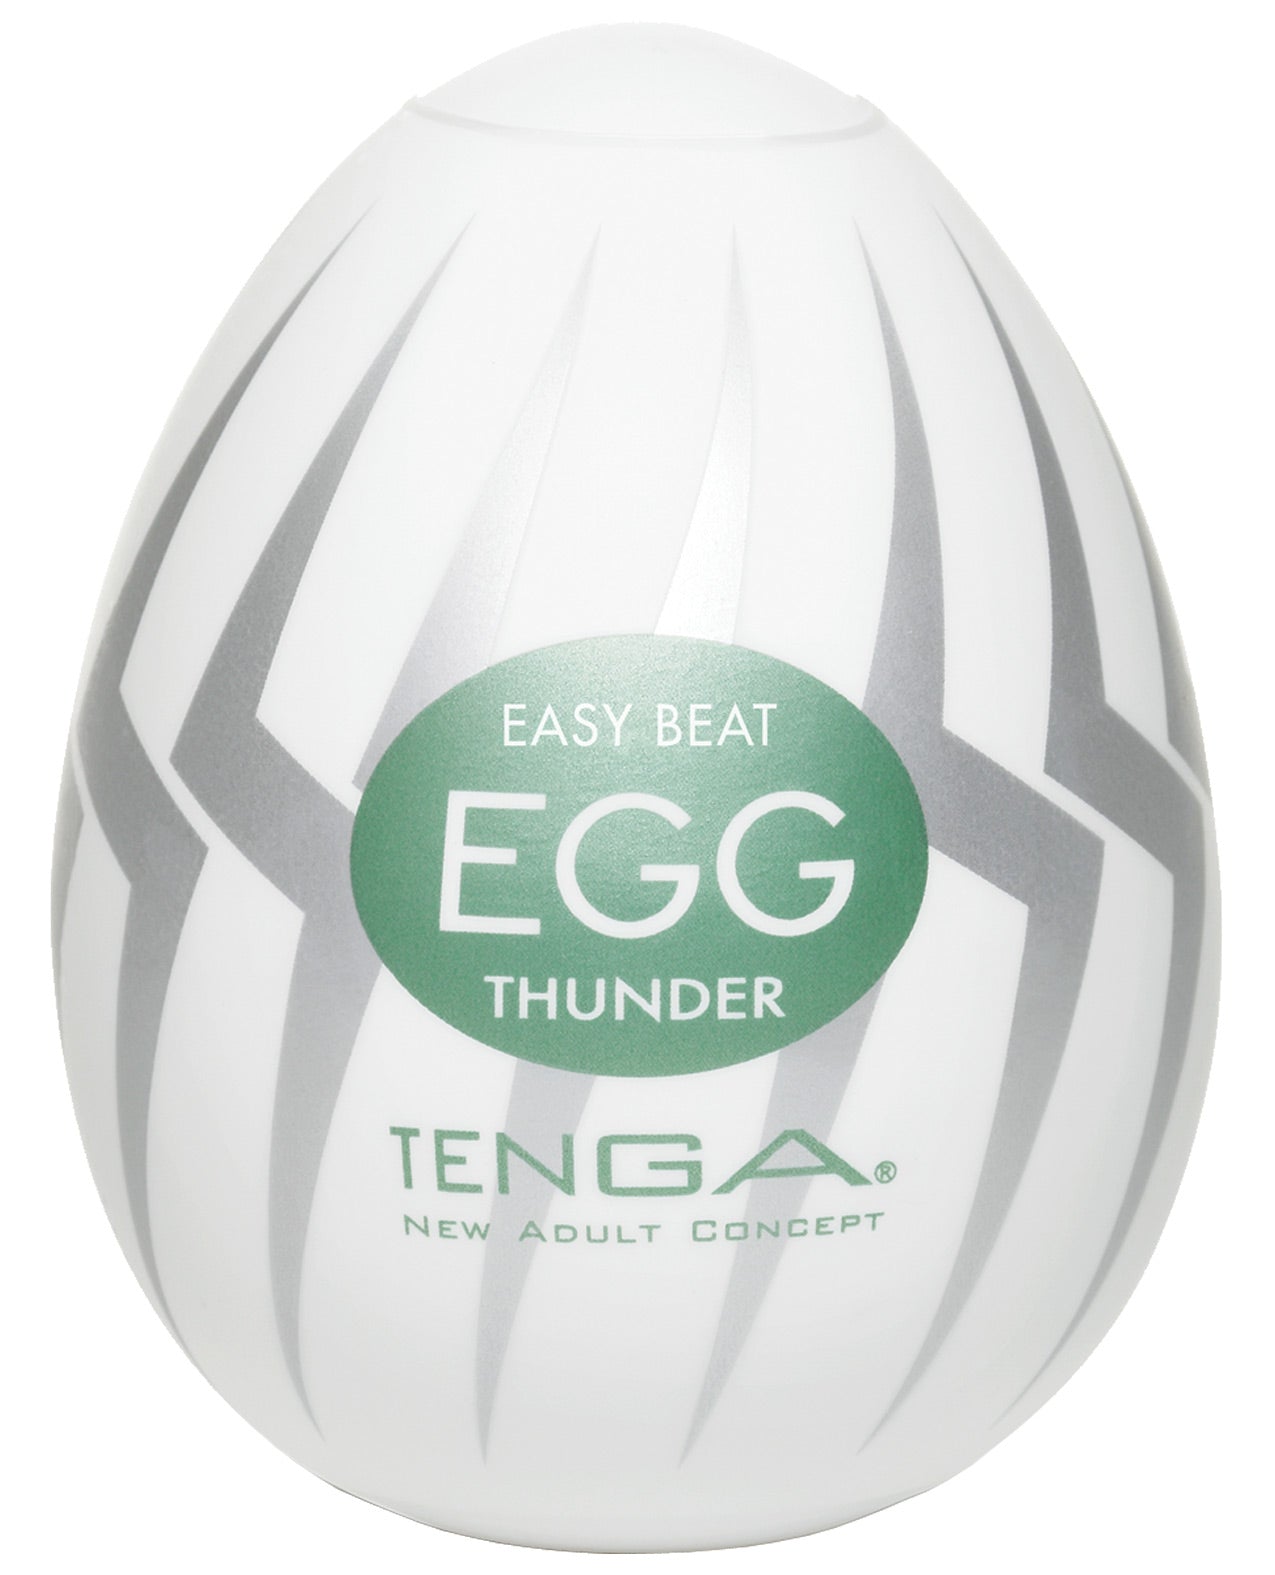 Tenga Hard Gel Egg - Thunder